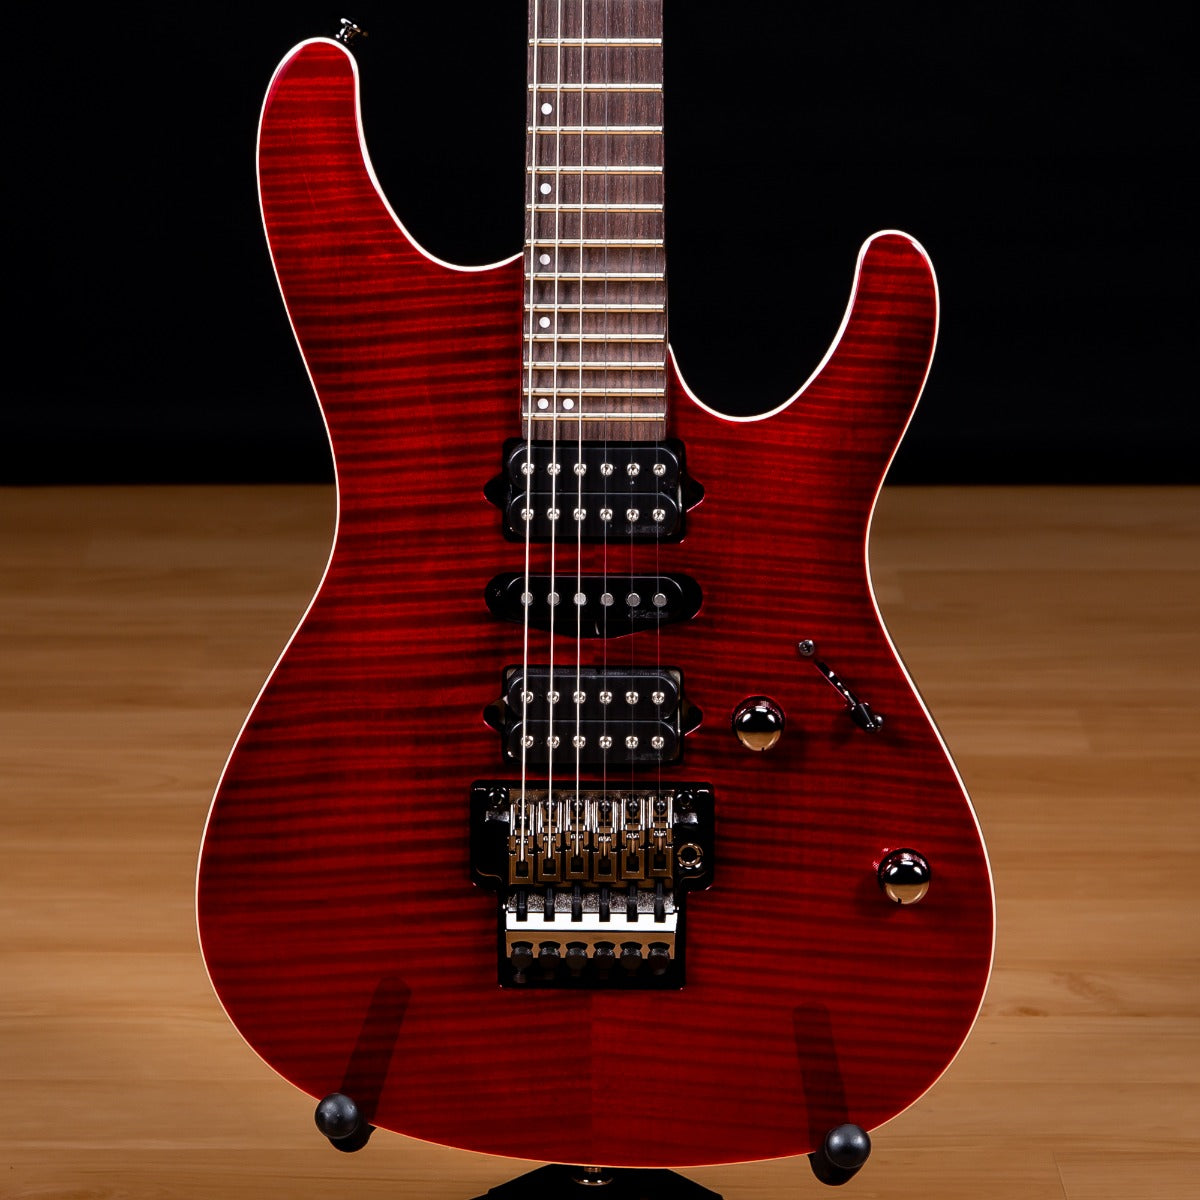 IBANEZ KIKO100 Kiko Loureiro Signature Electric Guitar - Transparent Ruby Red view 1